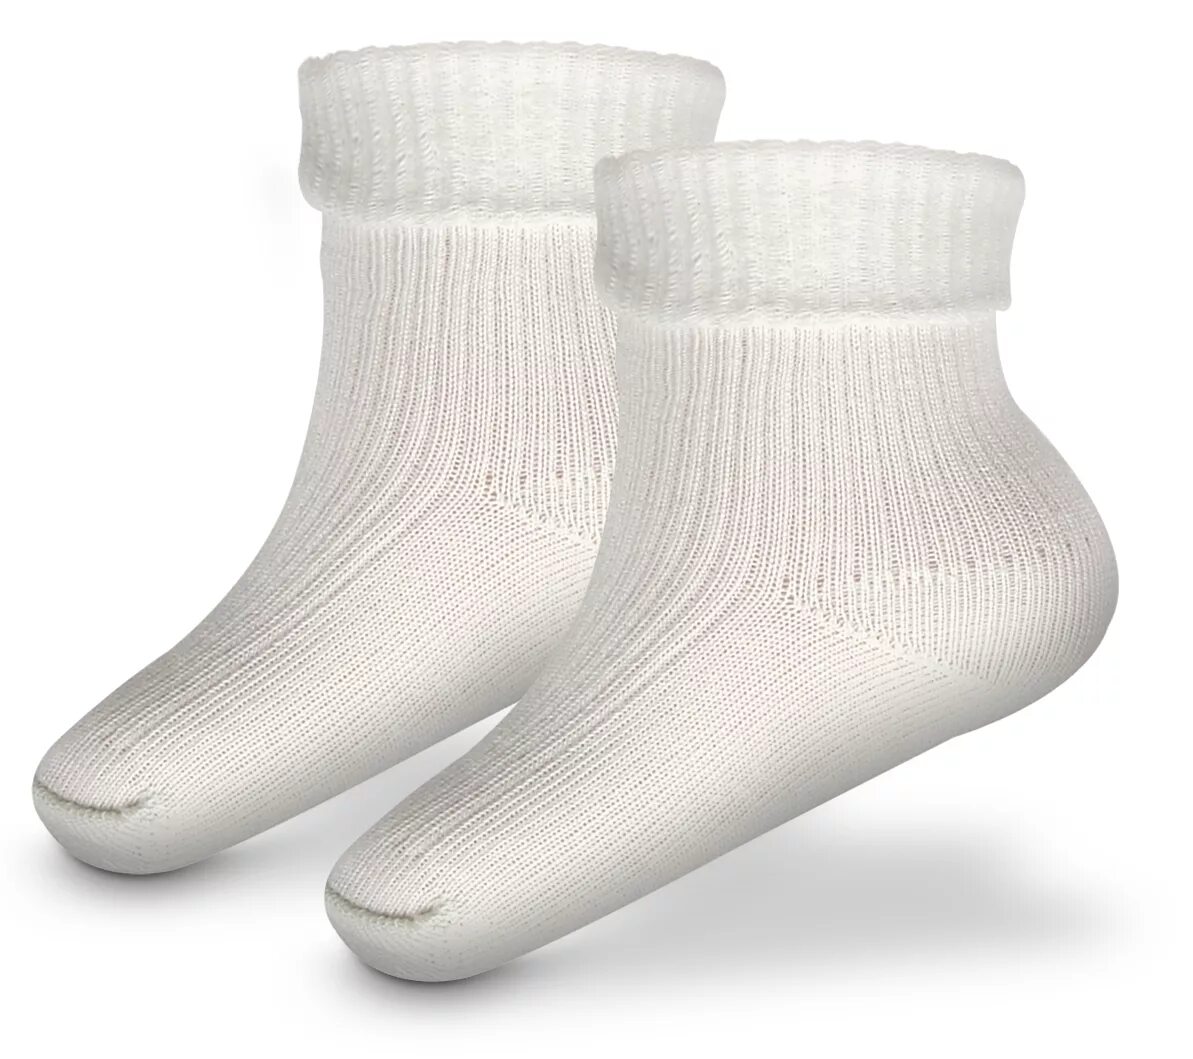 Хлопчатобумажные носки. Носки из хлопка. Белые носки. Тонкие хлопчатобумажные носки.